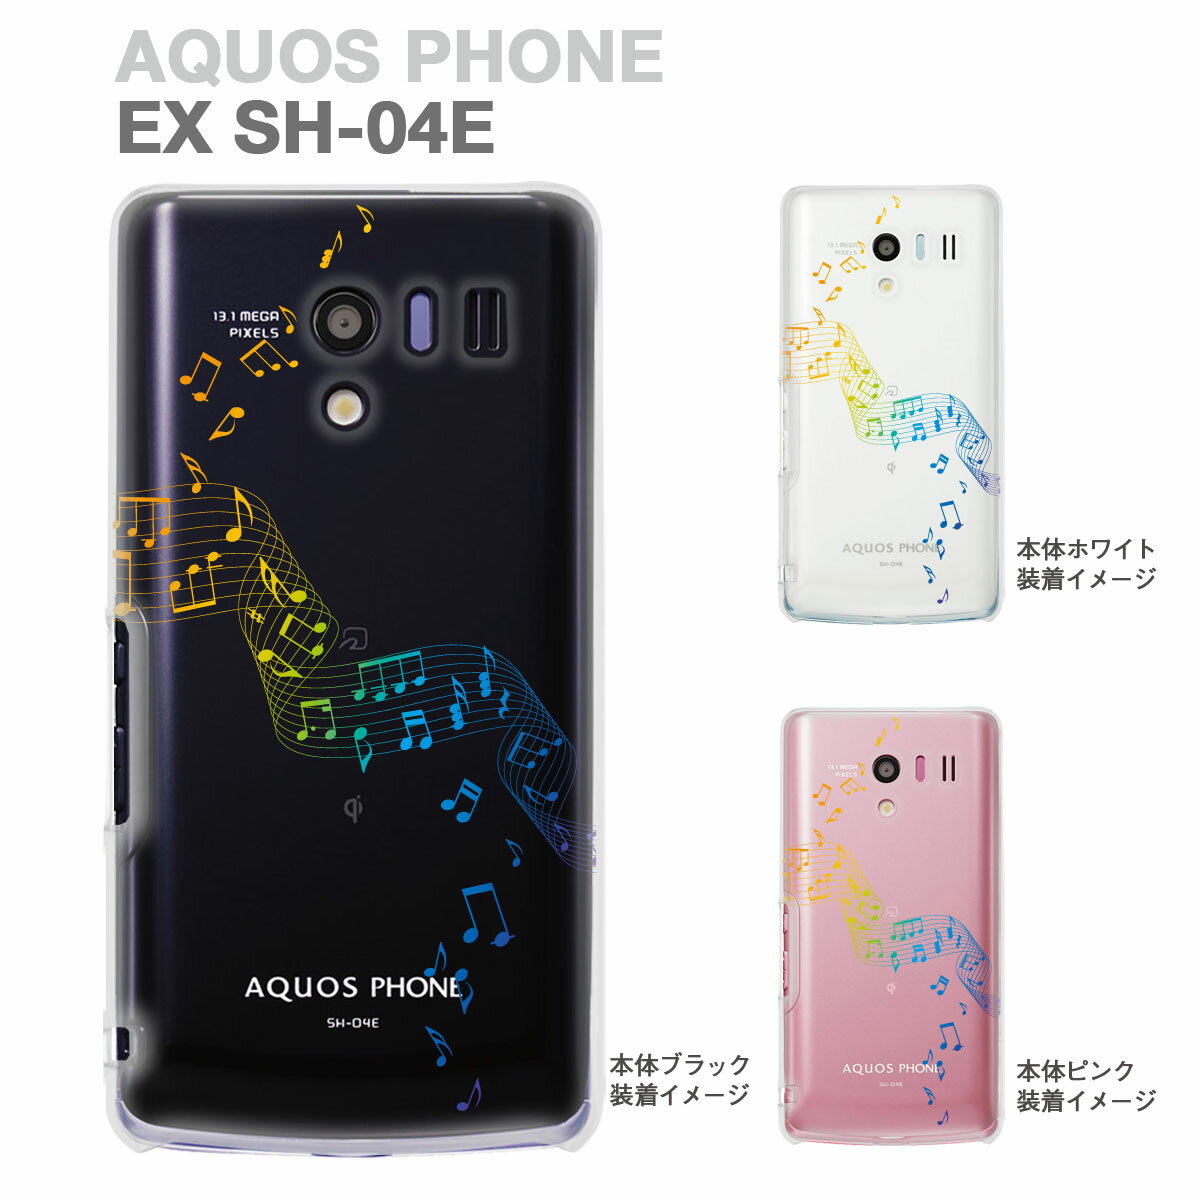 スマートフォン・携帯電話アクセサリー, ケース・カバー AQUOS PHONE EX SH-04EIGZO 09-sh04e-mu0003